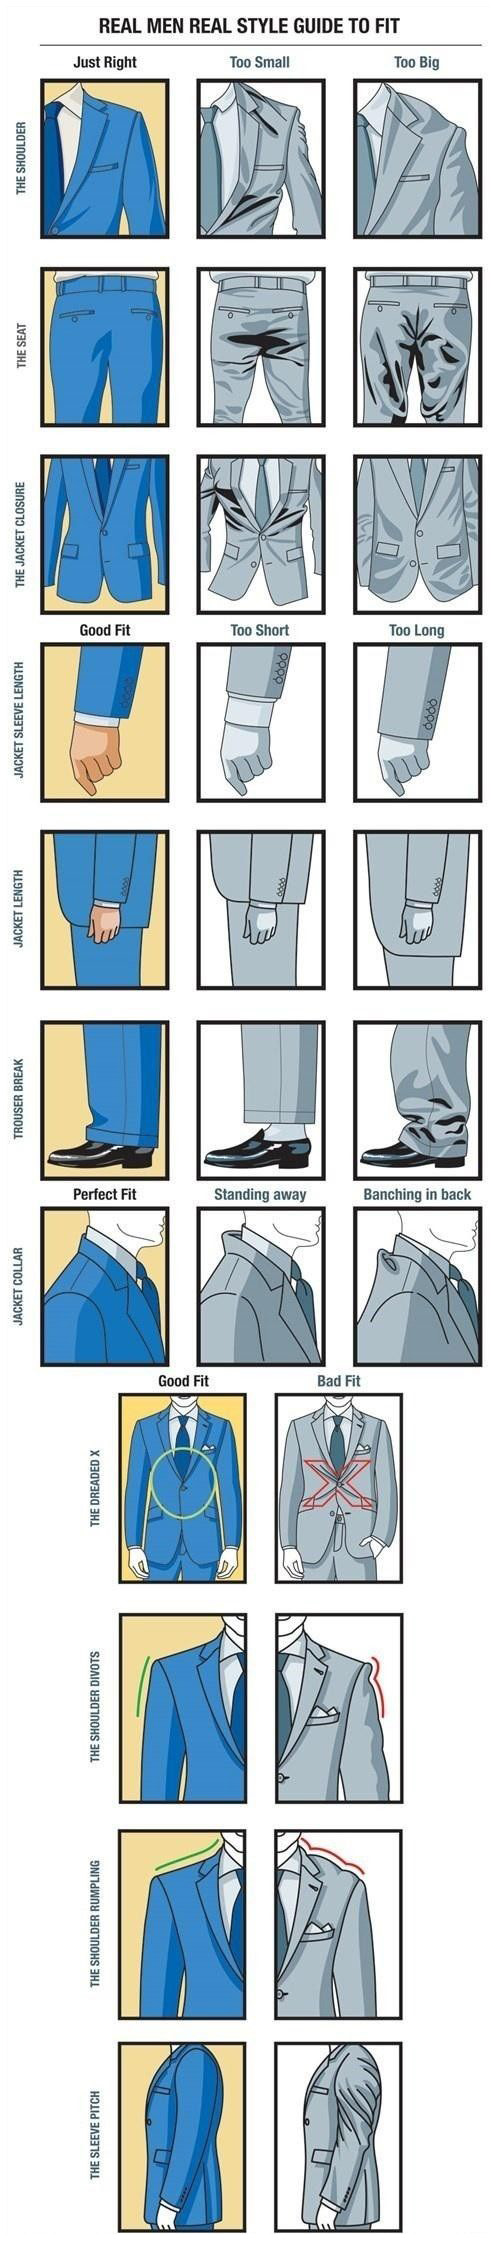 How to: dress like a gent